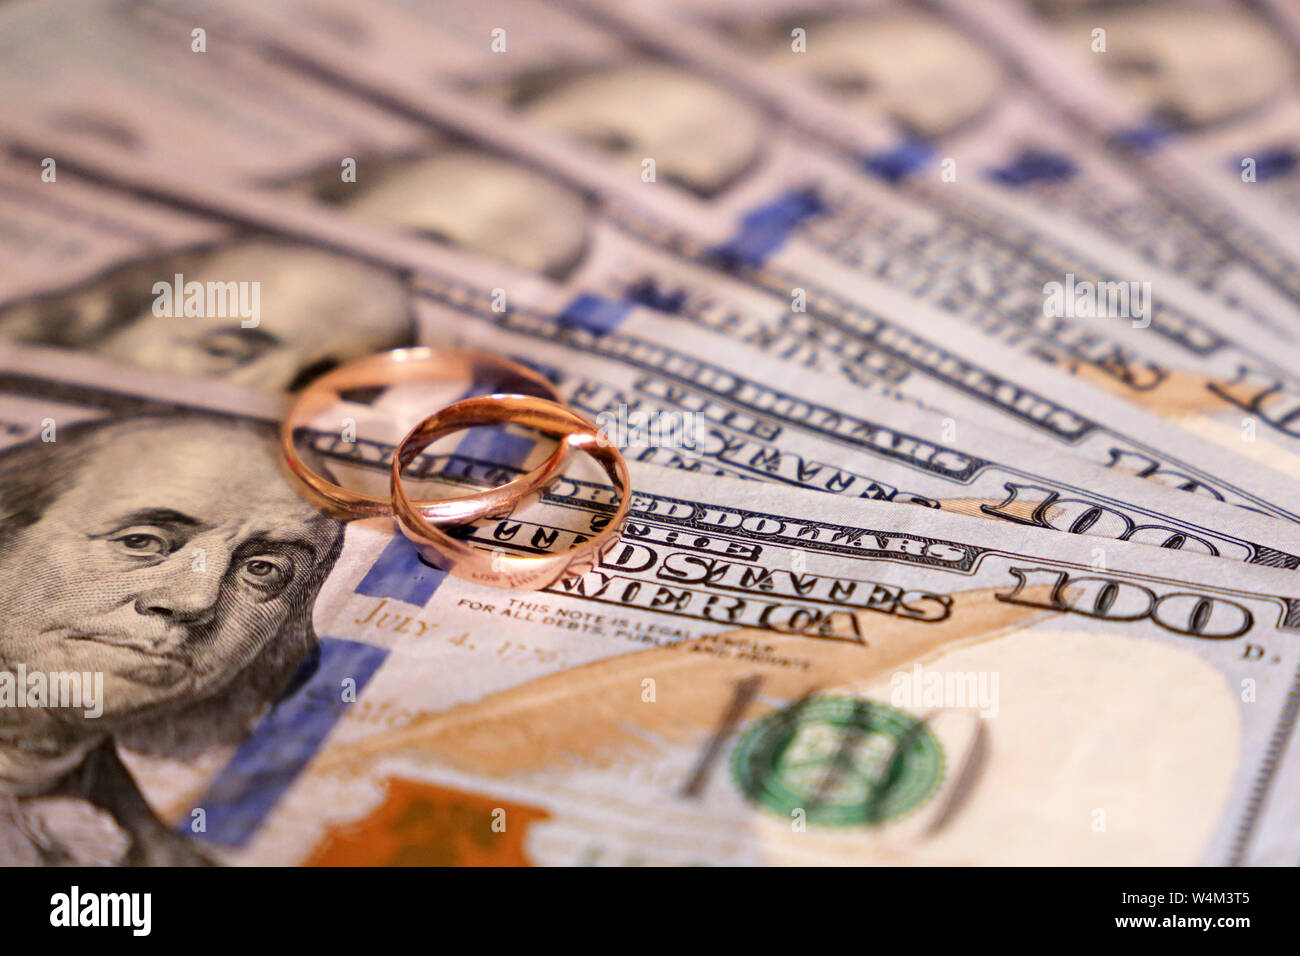 Les anneaux de mariage sur le dollar US. Concept de mariage de convenance, mariage budget, les économies pour l'engagement Banque D'Images